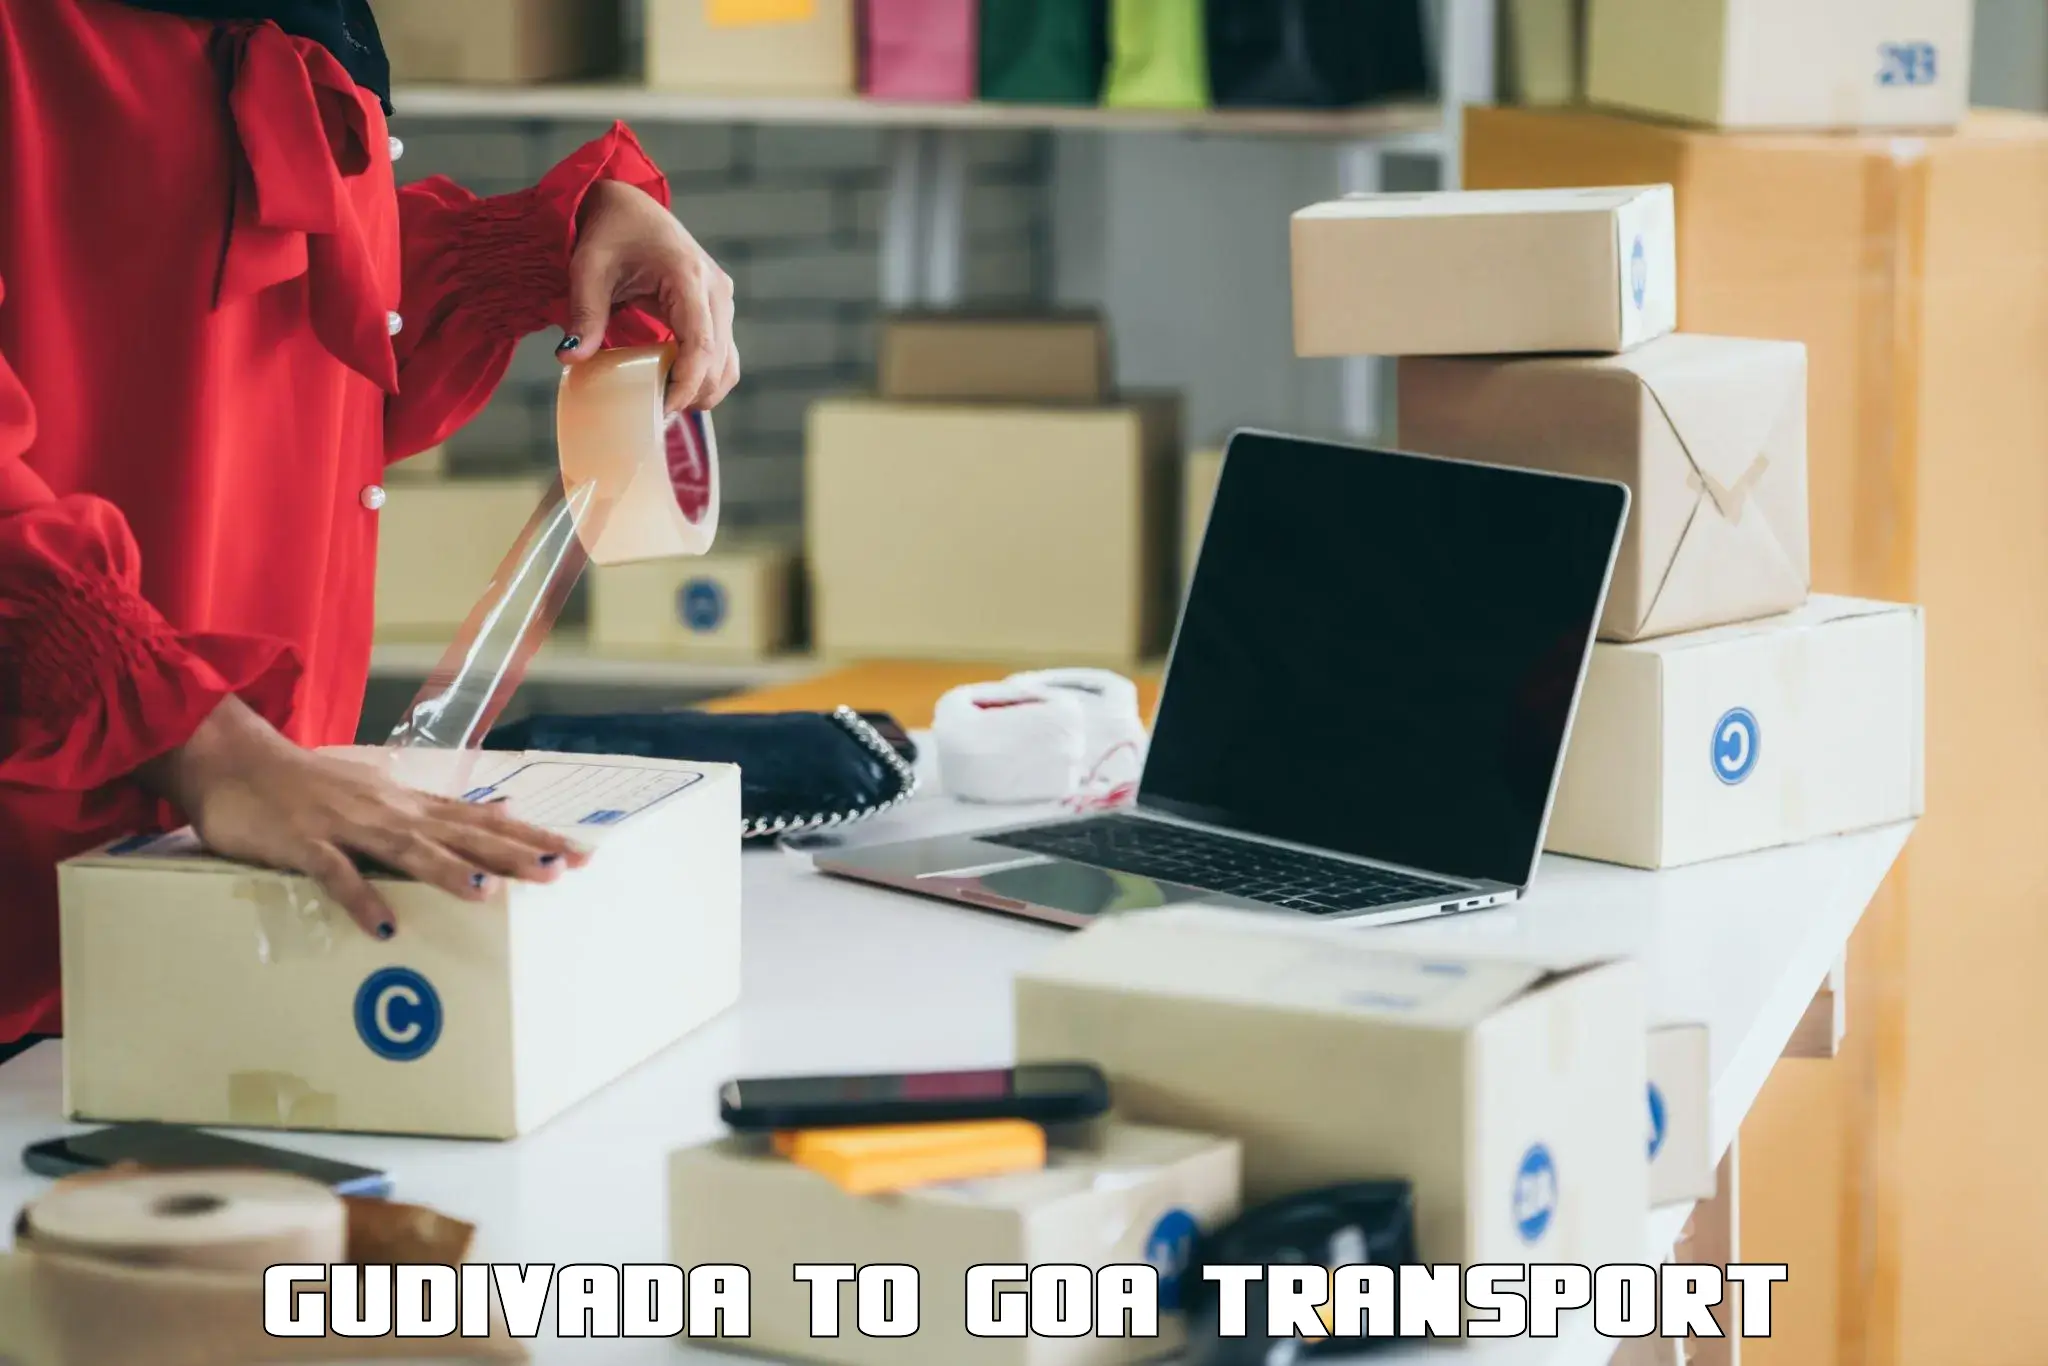 Transportation services Gudivada to South Goa